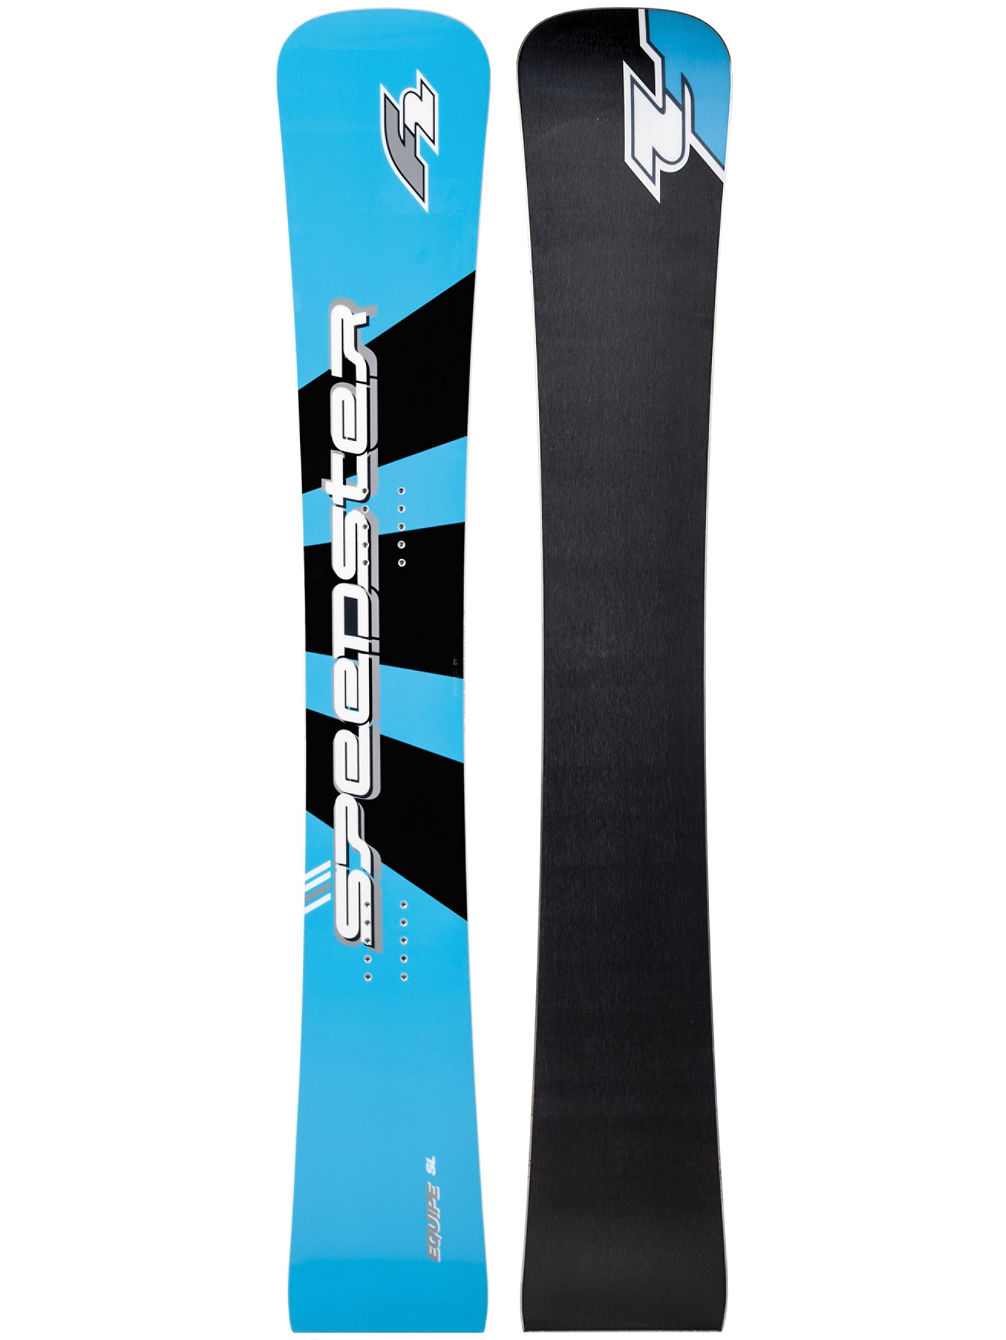 Speedster SL 158 Equipe TX Carbon 2019 Snowboard alpin